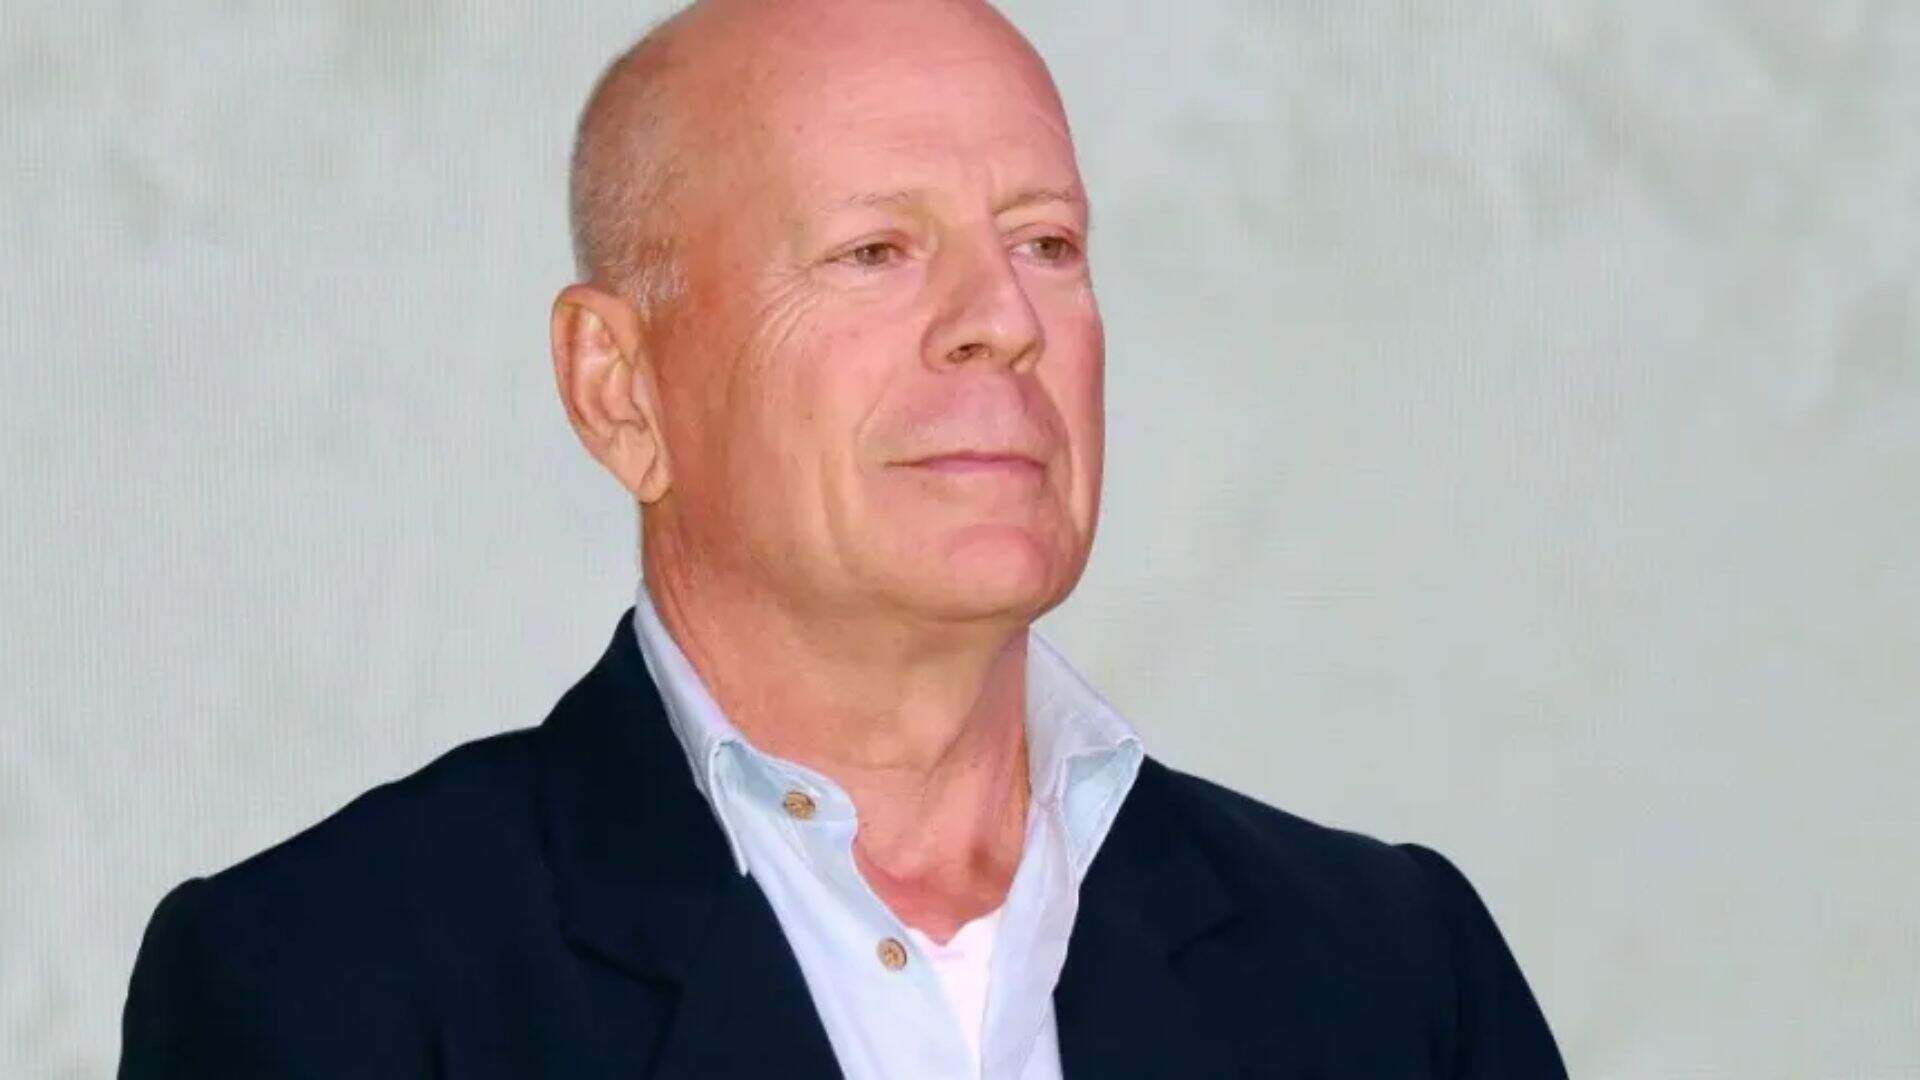 Bruce Willis revela doença grave, anuncia pausa na carreira e fãs lamentam: “Não acredito!” - Metropolitana FM